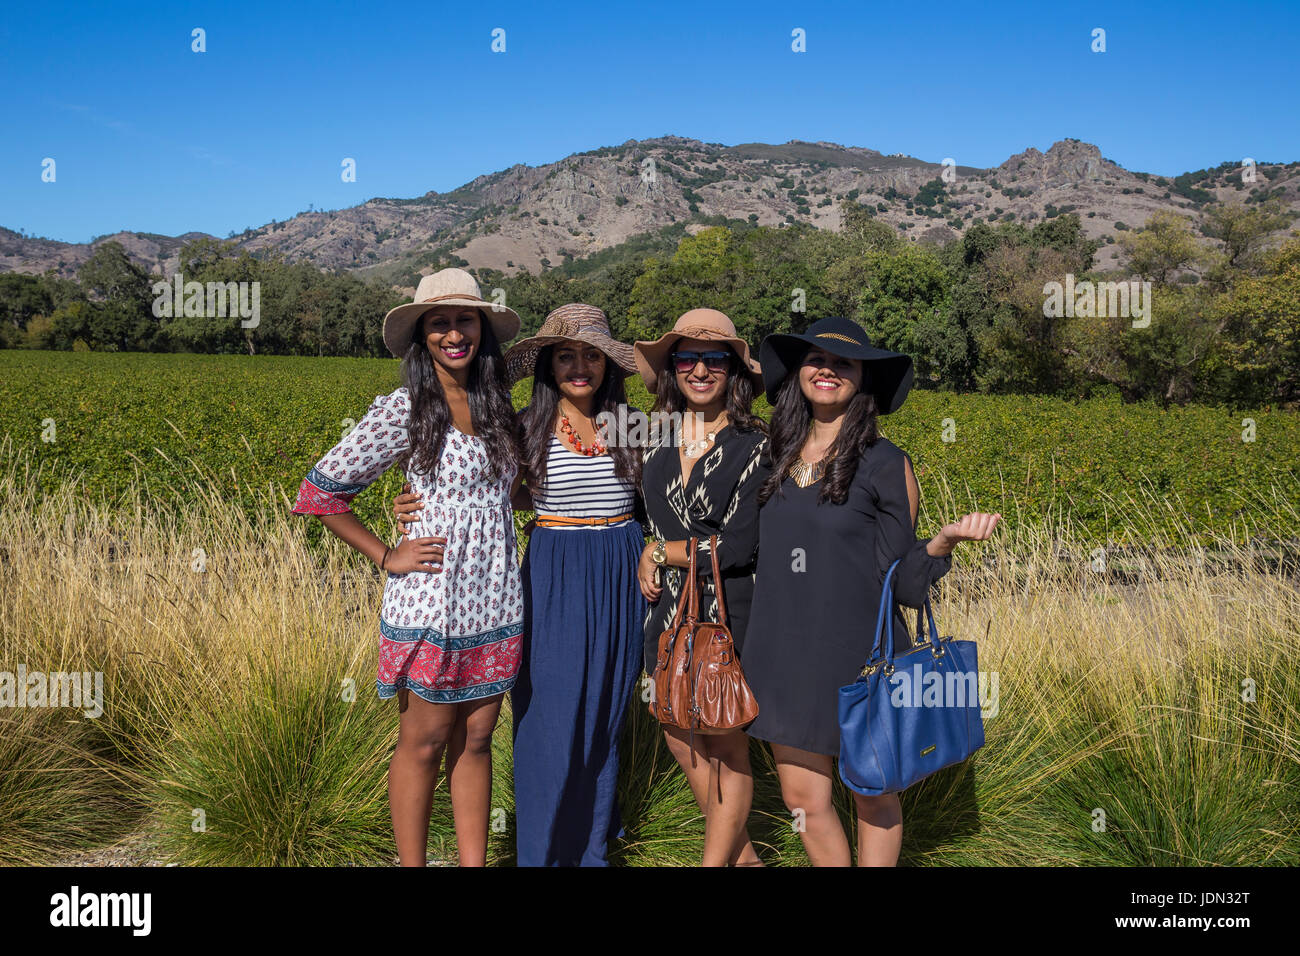 Le donne in età adulta, turisti, visitatori, visitando, feste di addio al celibato's Leap Cantine, Silverado Trail, Napa Napa Valley Napa County, California, Stati Uniti Foto Stock